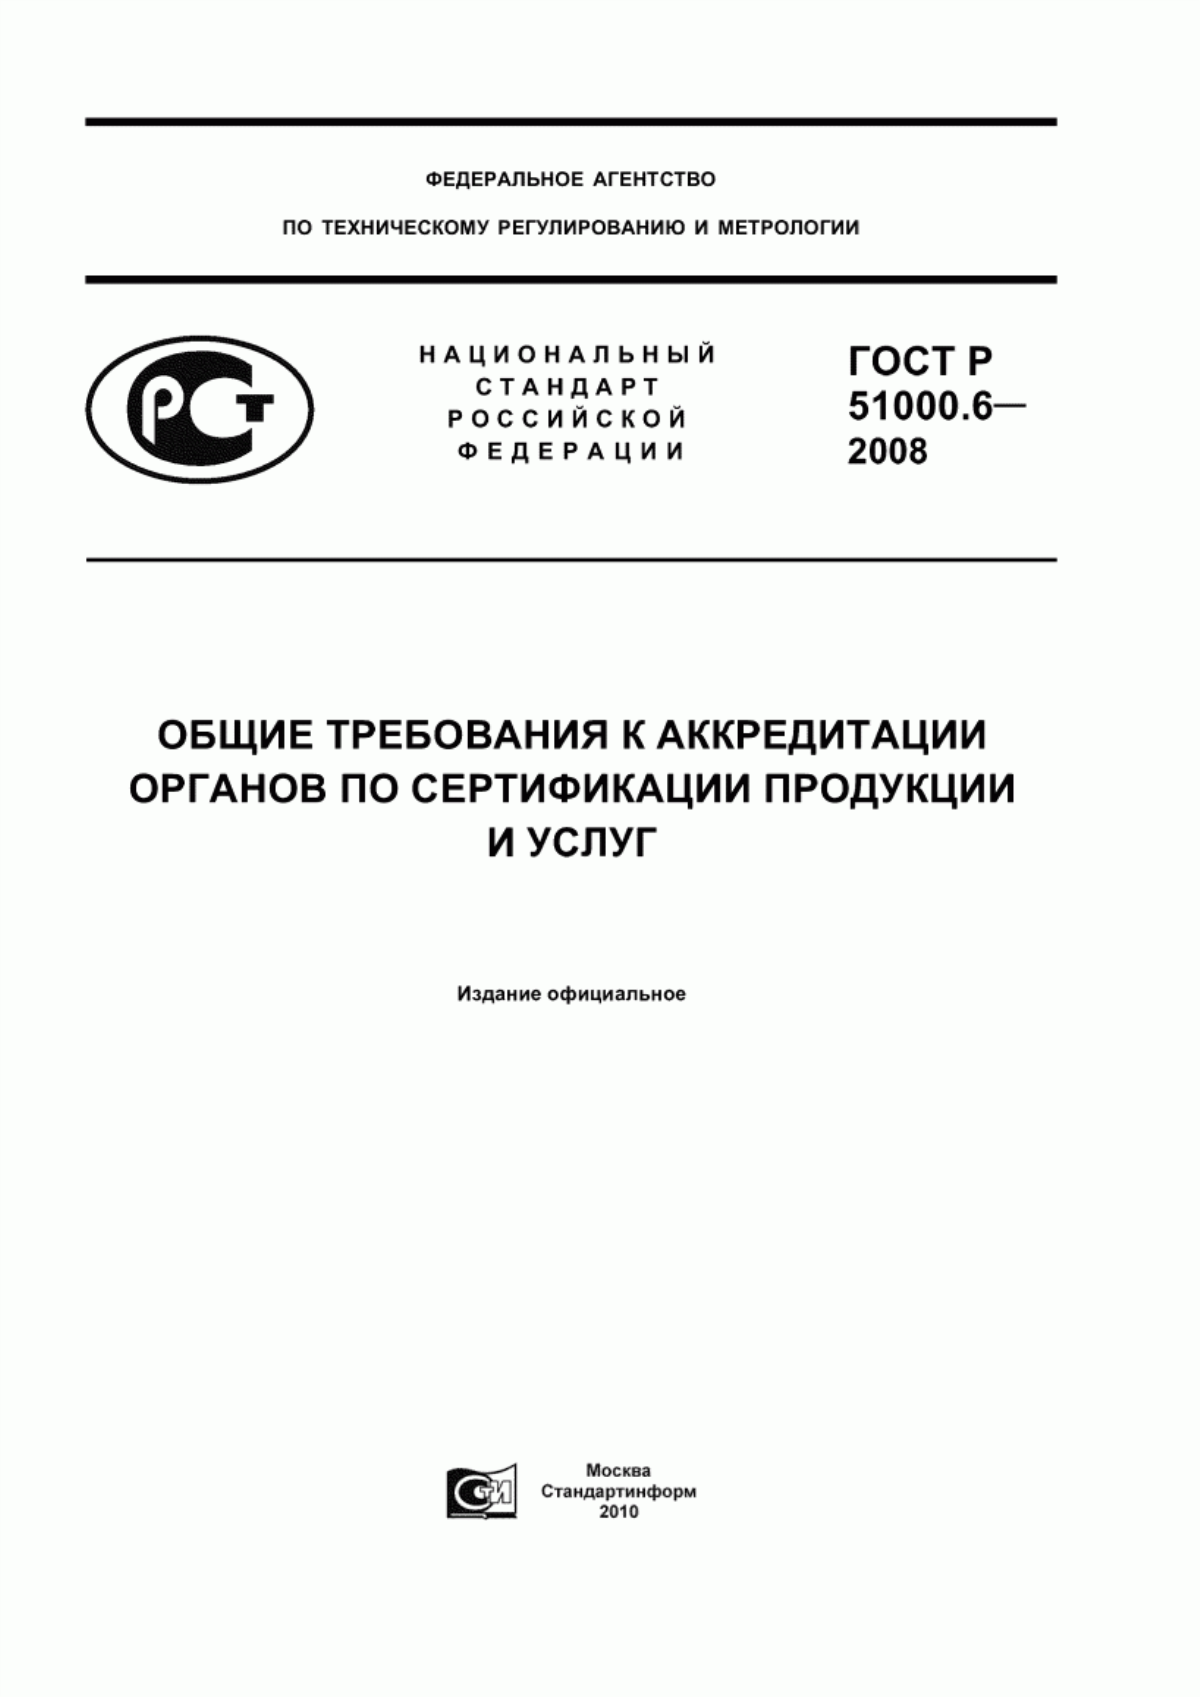 ГОСТ Р 51000.6-2008 Общие требования к аккредитации органов по сертификации продукции и услуг